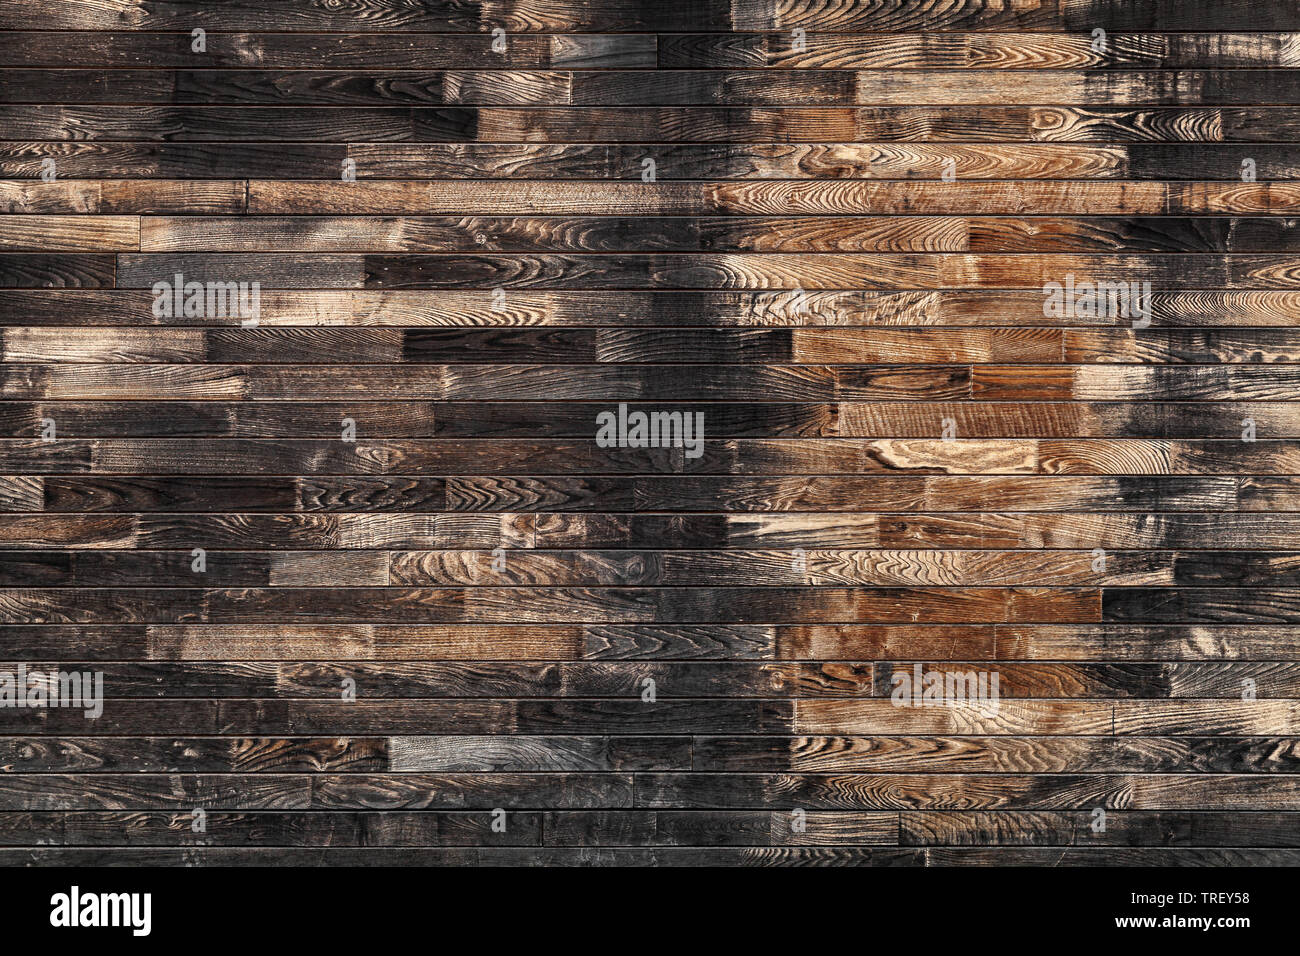 Grobe alte hölzerne Wand Hintergrund Textur, ungefärbte Planken mit schwarzen Bereichen Stockfoto